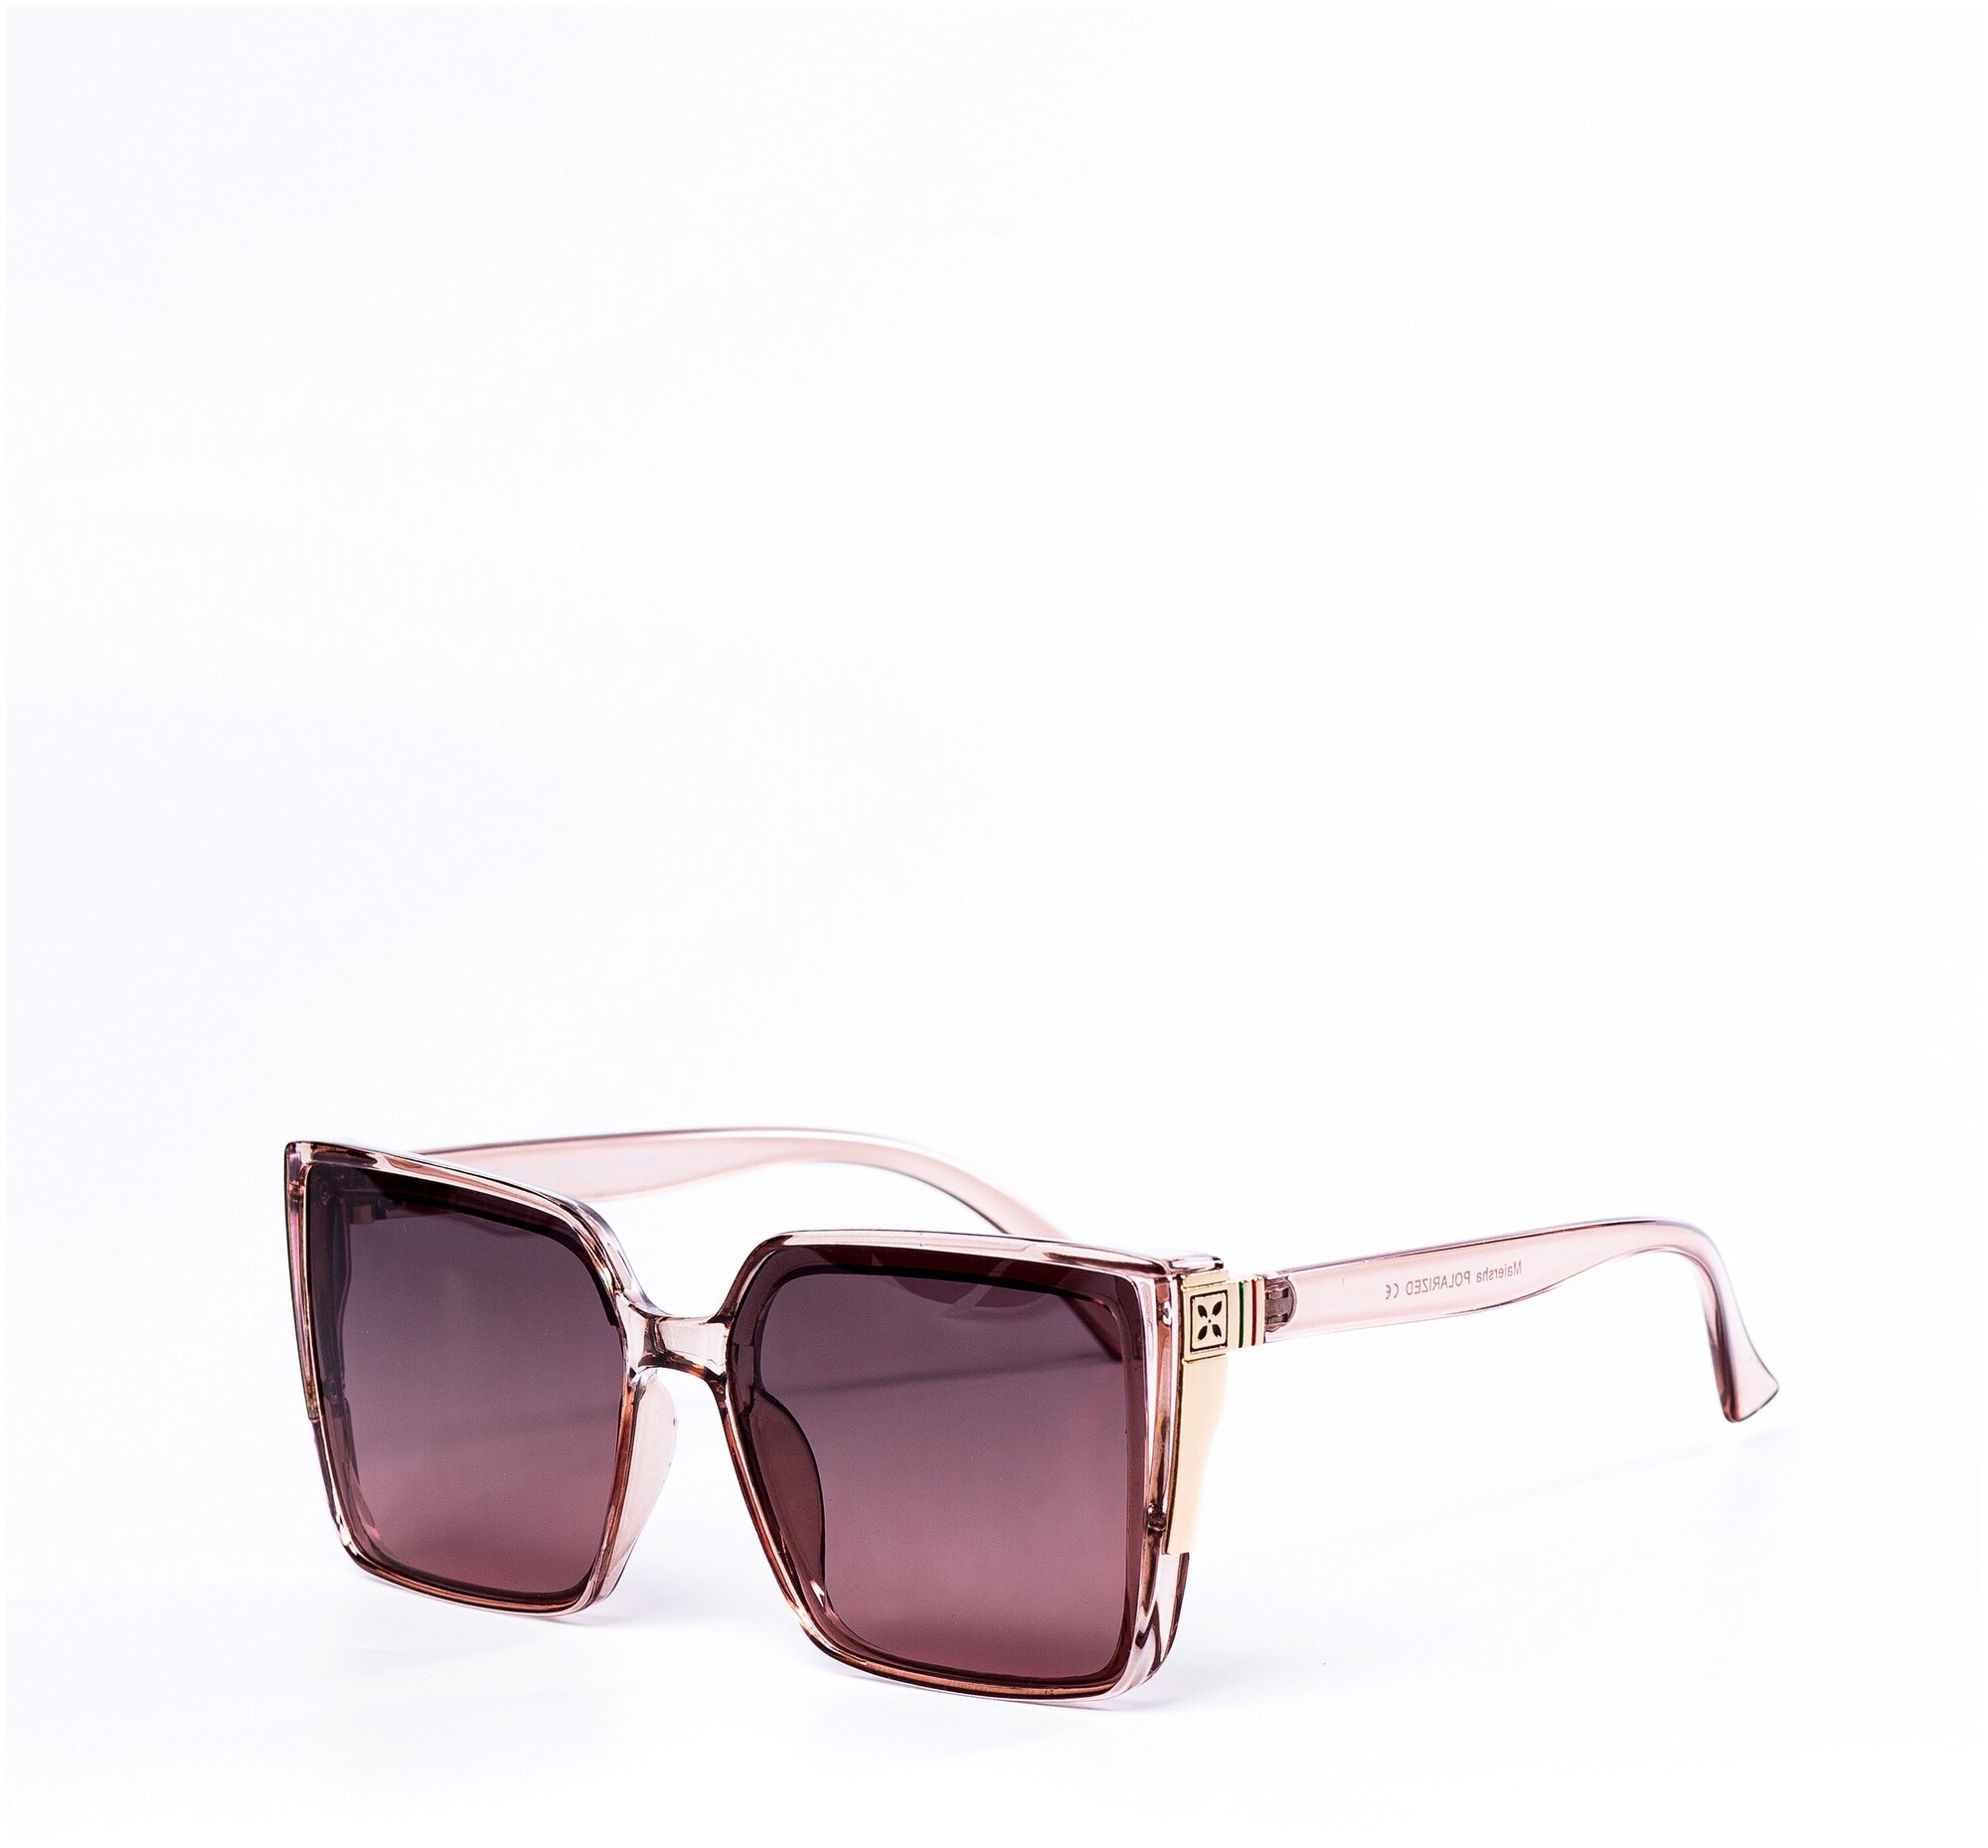 Солнцезащитные очки женские / Оправа квадратная / Стильные очки / Ультрафиолетовый фильтр / Защита UV400 / Чехол в подарок / Темные очки 200422504